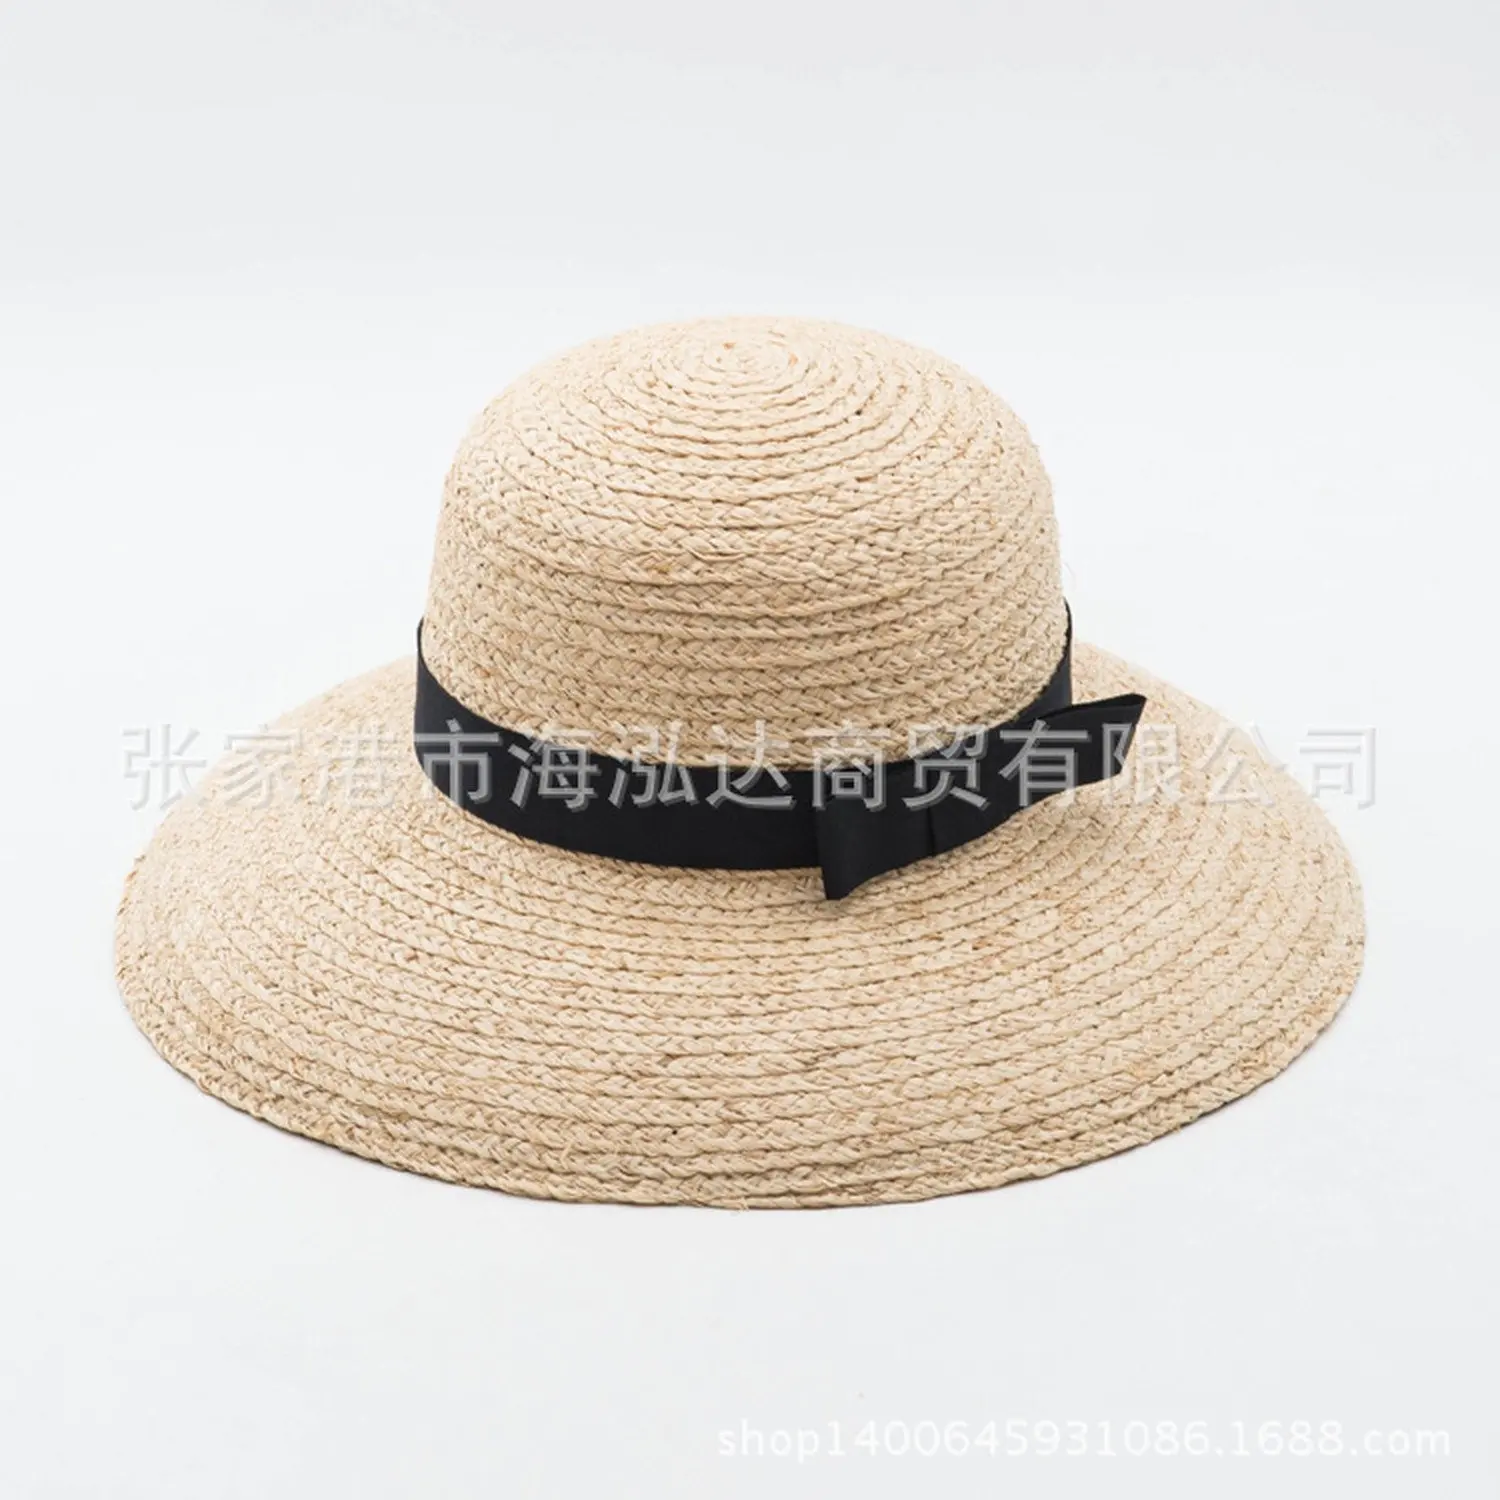 Соломенные шляпы с полями. Соломенная шляпа. Шляпа соломенная брендовая. Летняя шляпка с загнутыми полями. Соломенная шляпа с загнутыми полями.